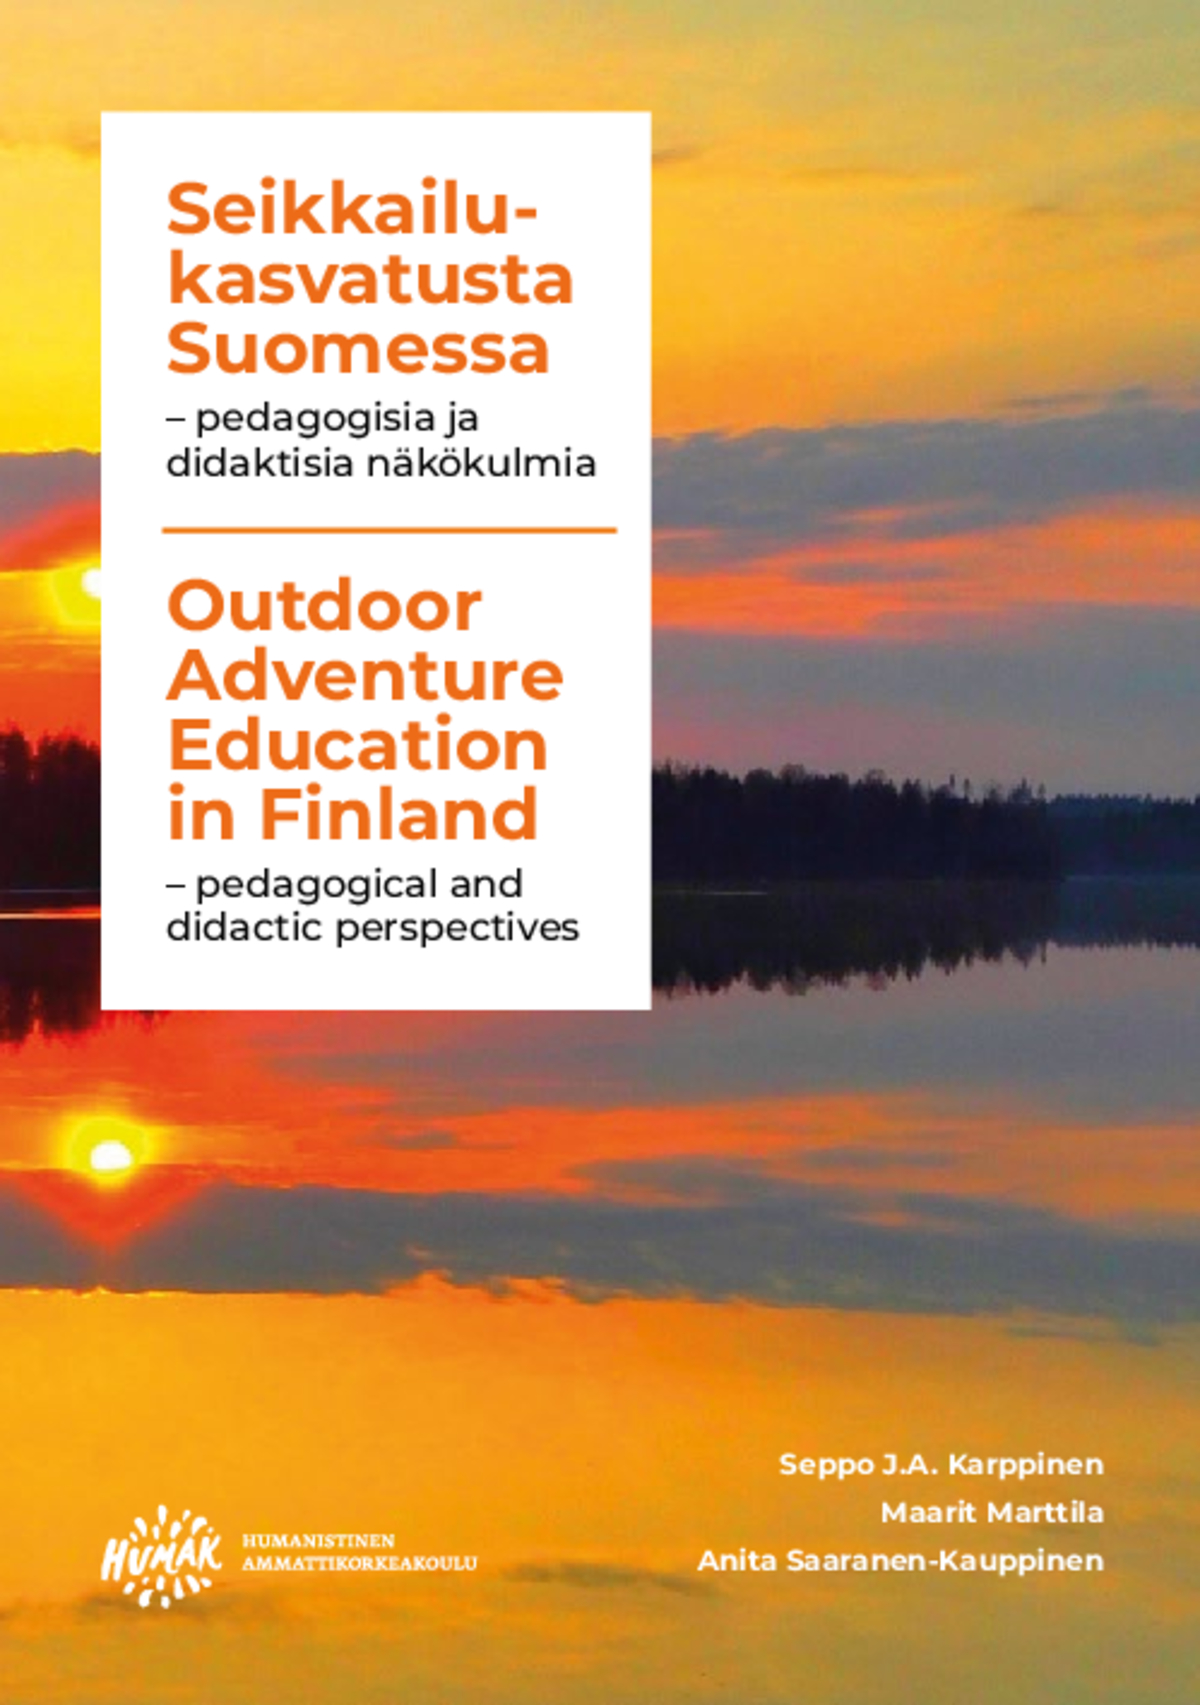 Outdoor Adventure Education in Finland / Seikkailukasvatusta Suomessa